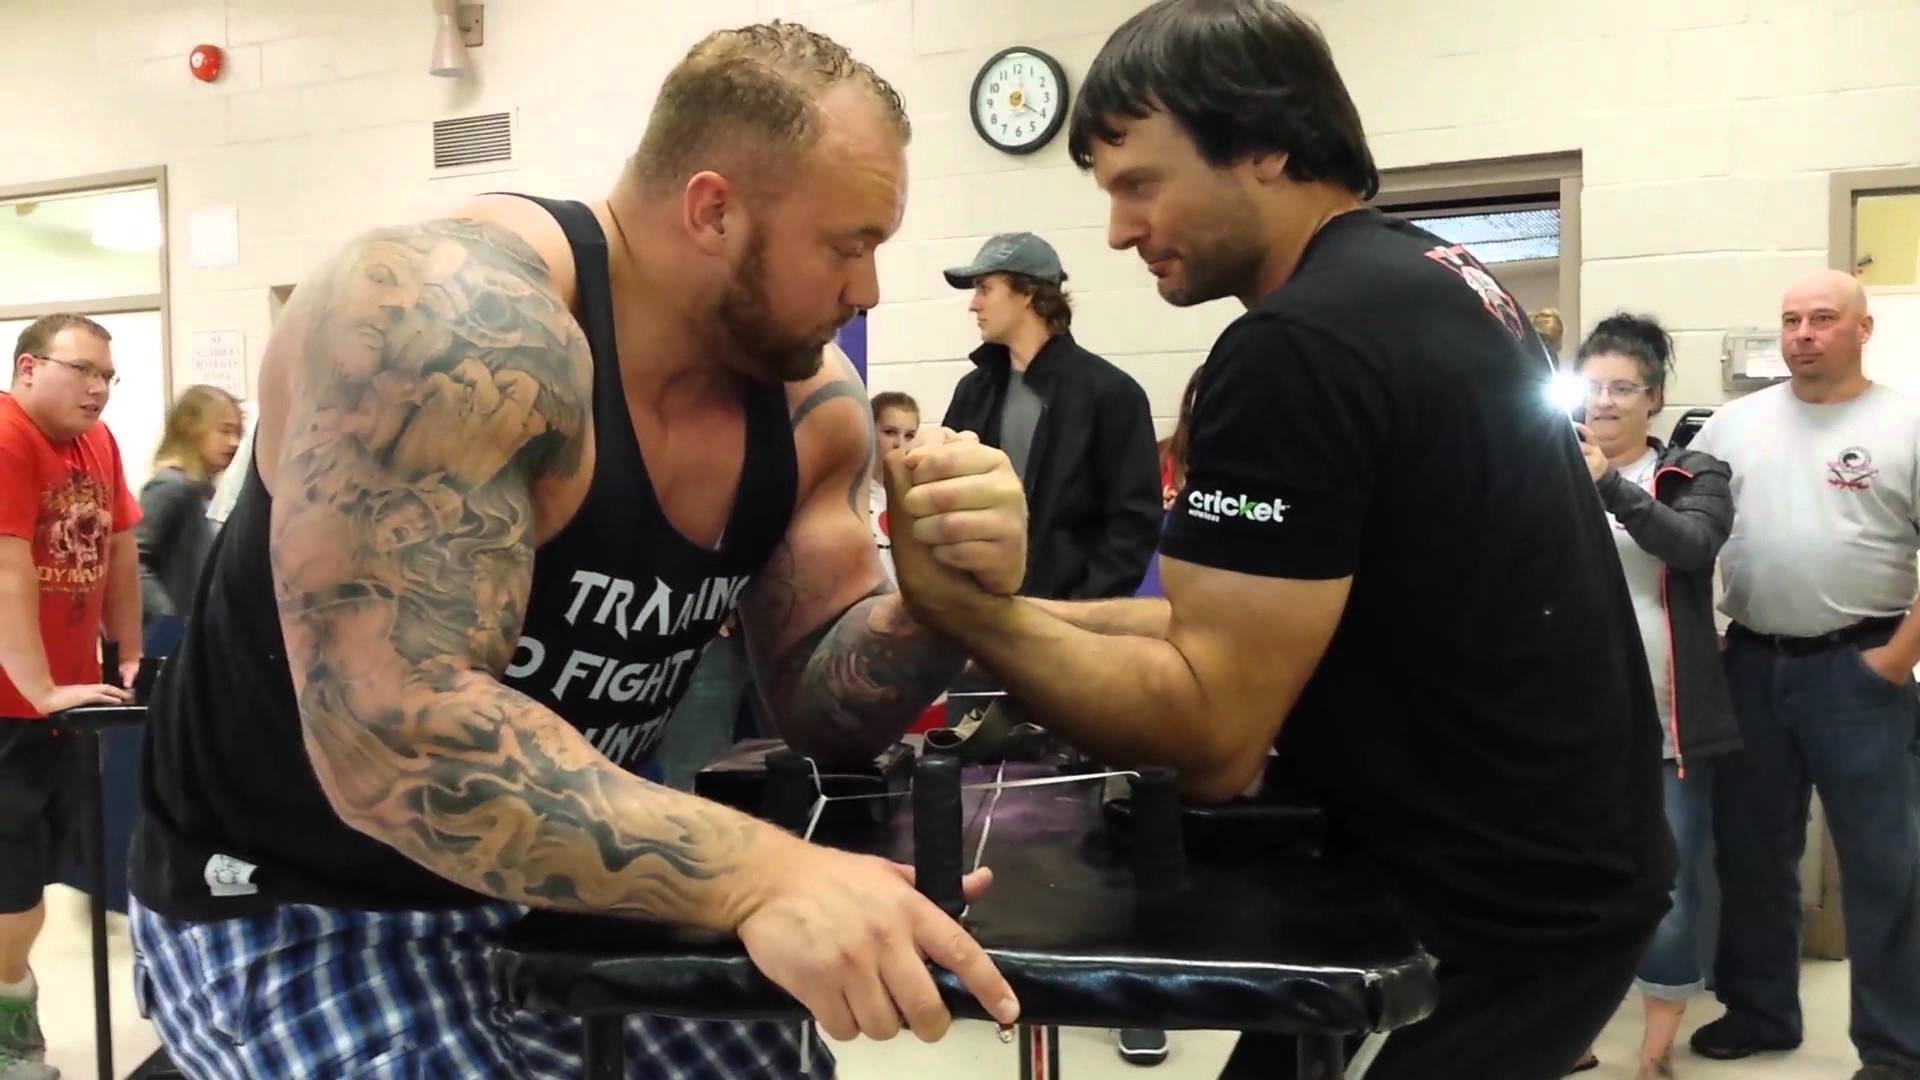 Devon Larratt vs The Mountain arm wrestling